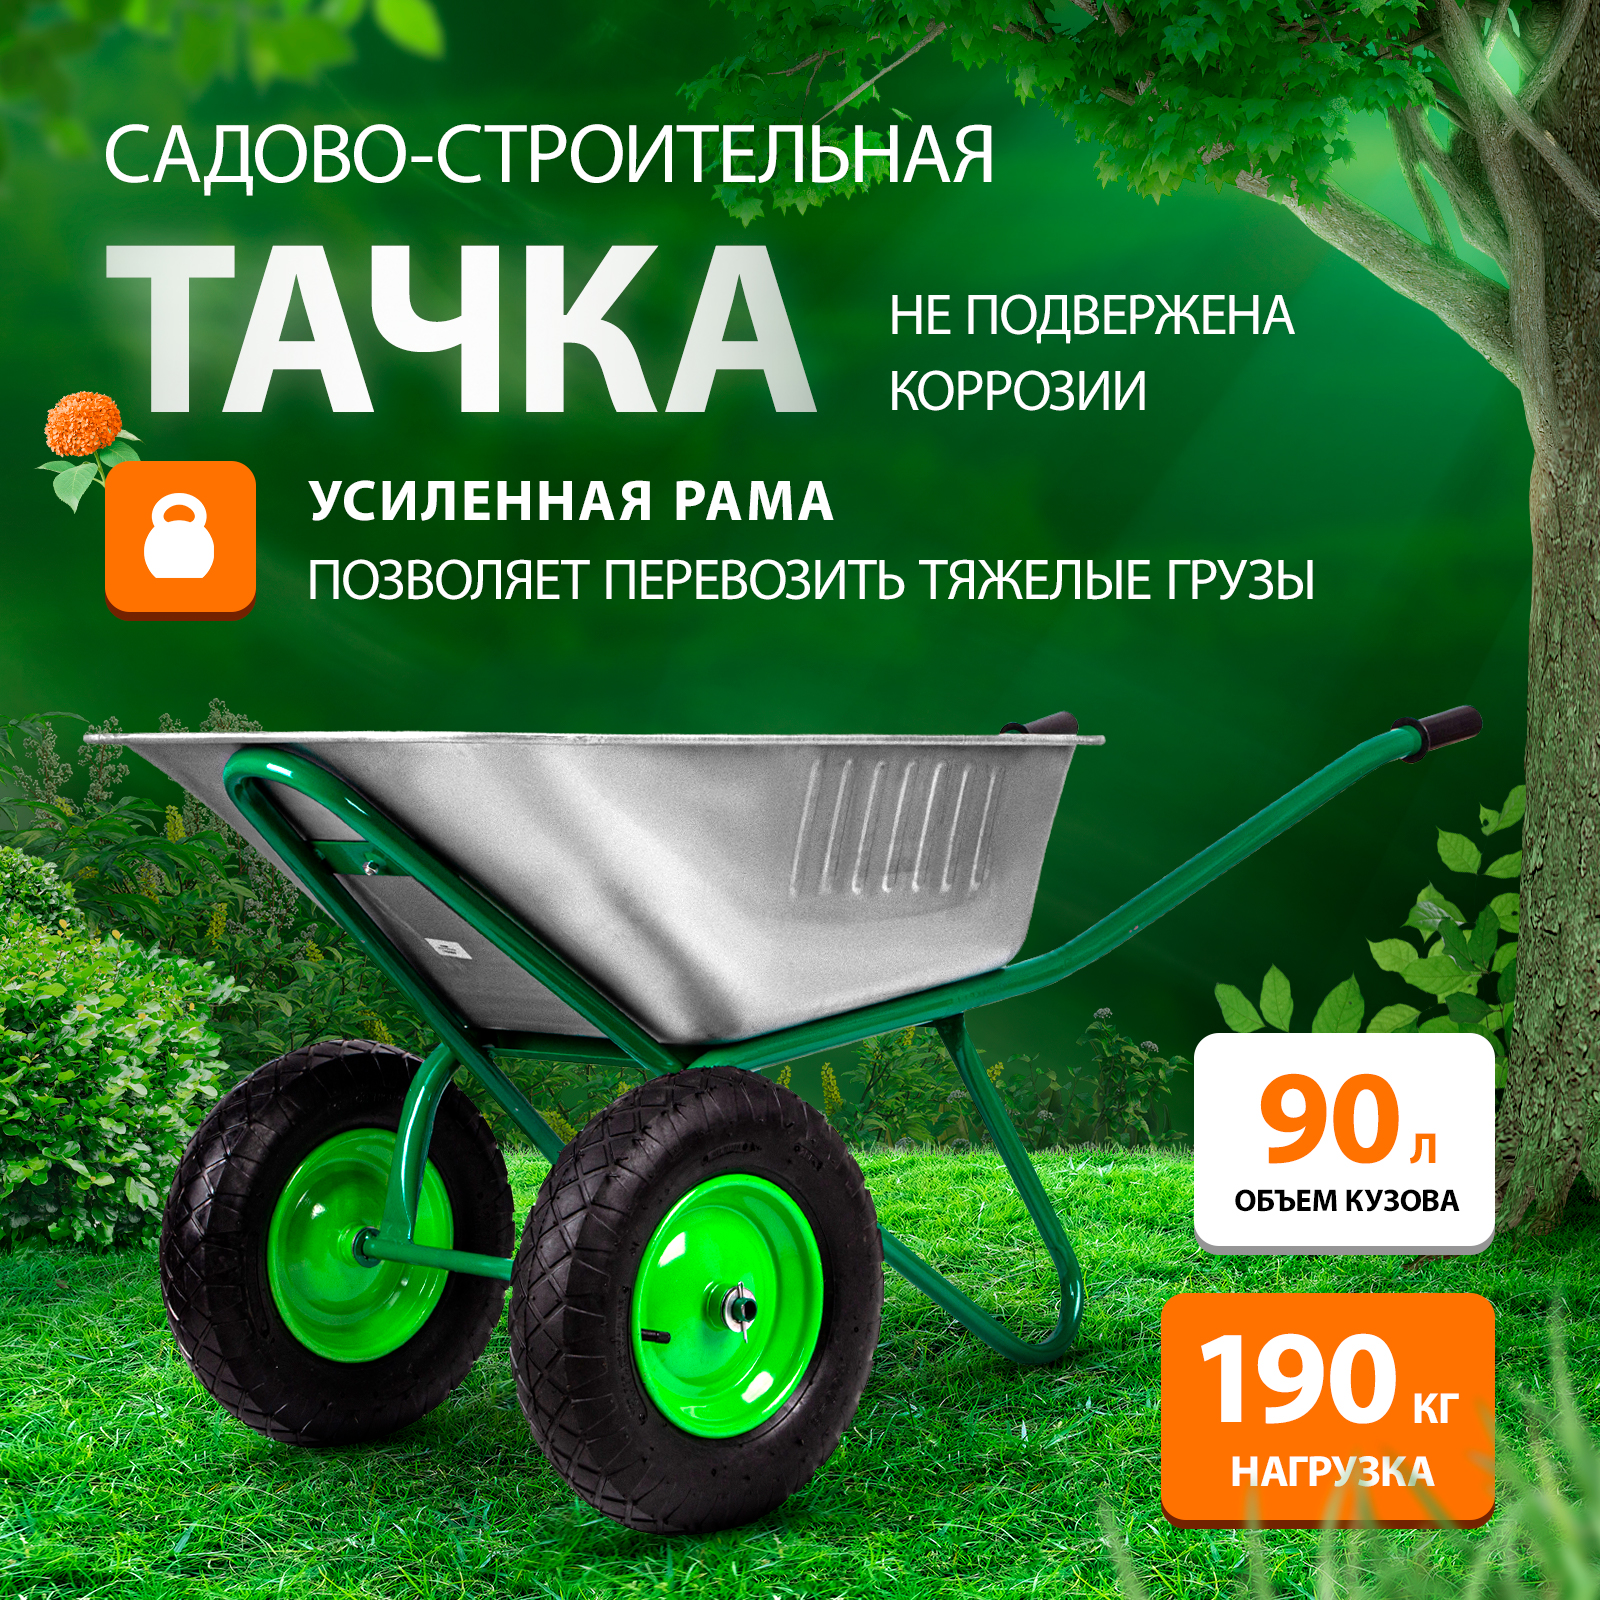 Садовая-строительная тачка RUSSIA 689863 грузоподъемность 320 кг объем 100 л